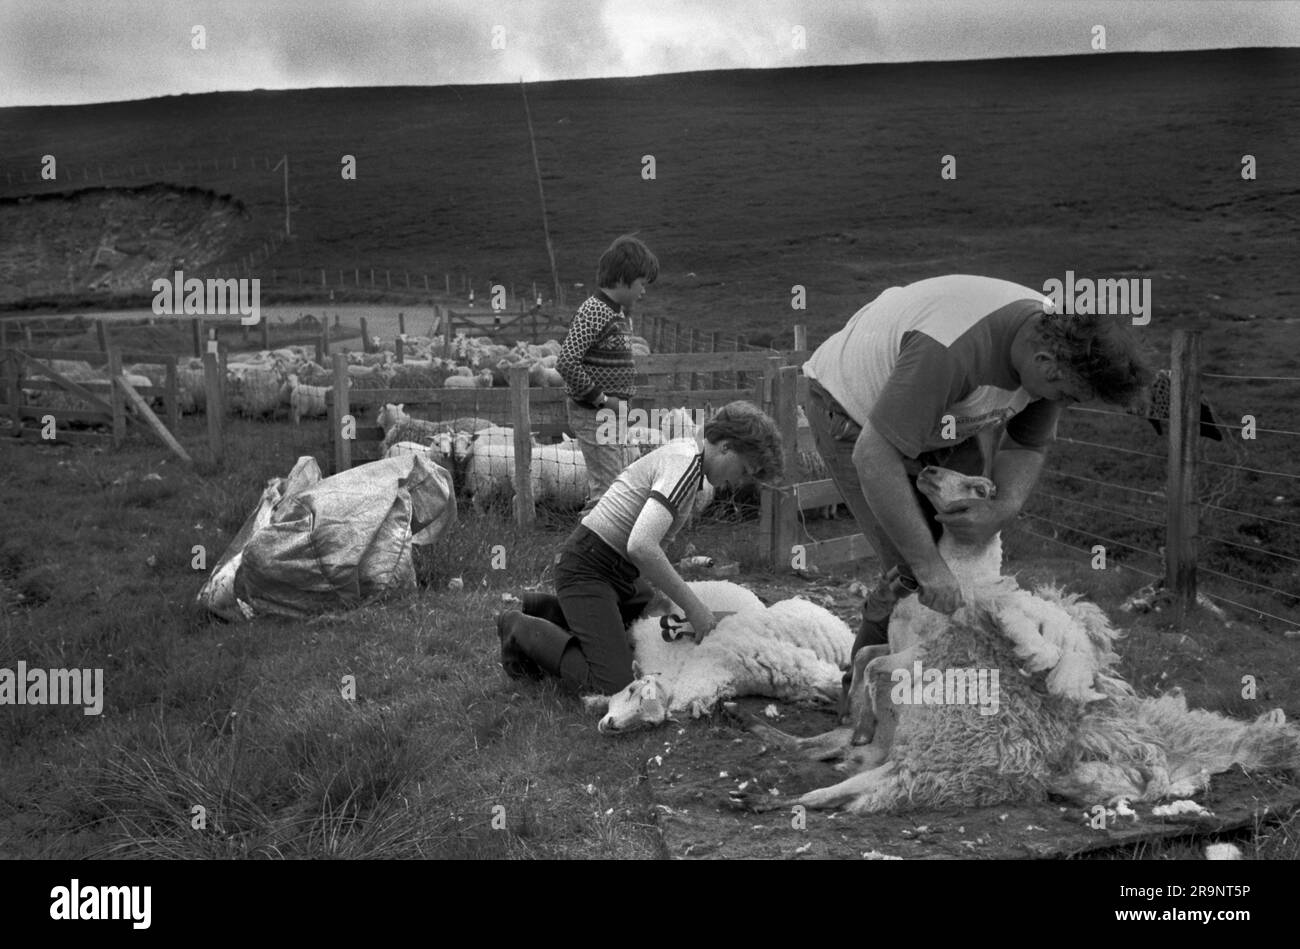 Crofting des îles Shetland. La tonte de brebis, le père et ses deux fils aident. Shetlands Mainland, îles Shetland, Écosse, vers 1979. ROYAUME-UNI 1970S HOMER SYKES Banque D'Images